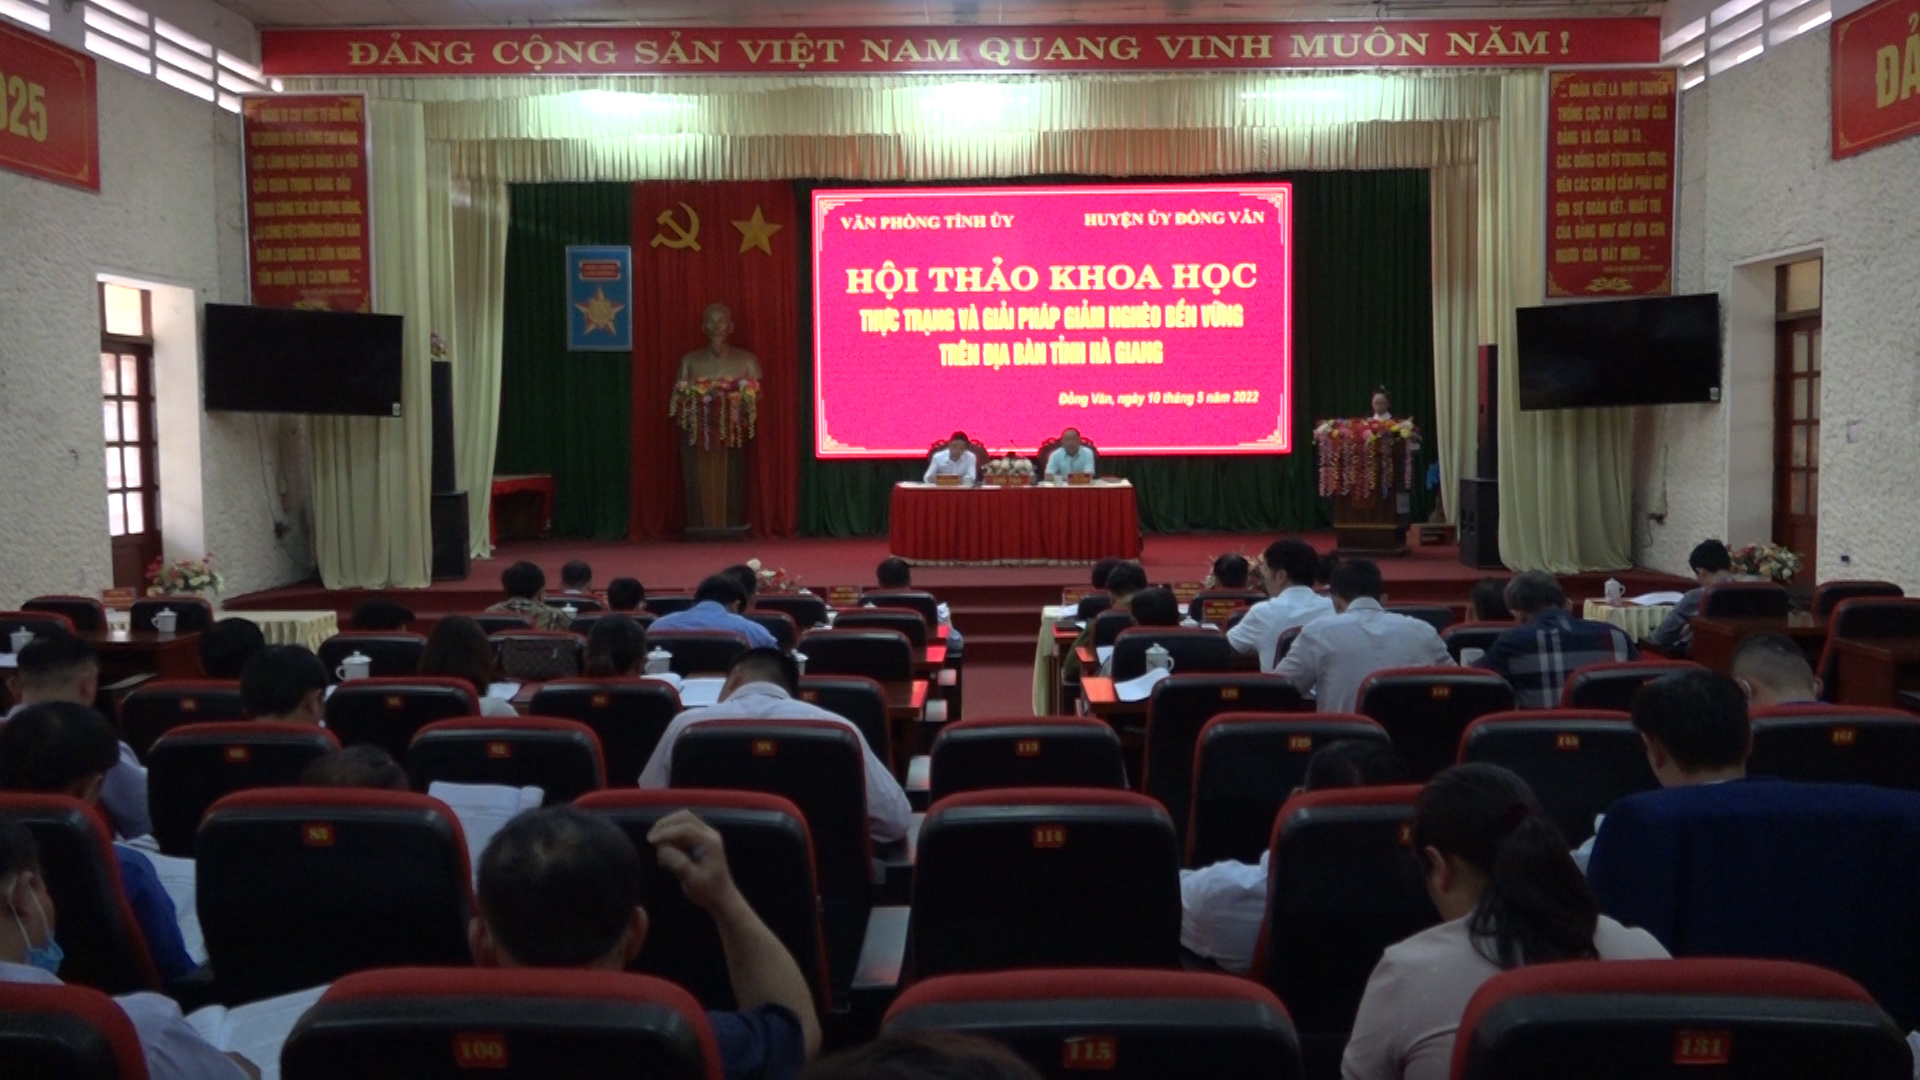 Hội thảo khoa học “Thực trạng và giải pháp giảm nghèo bền vững trên địa bàn tỉnh Hà Giang”